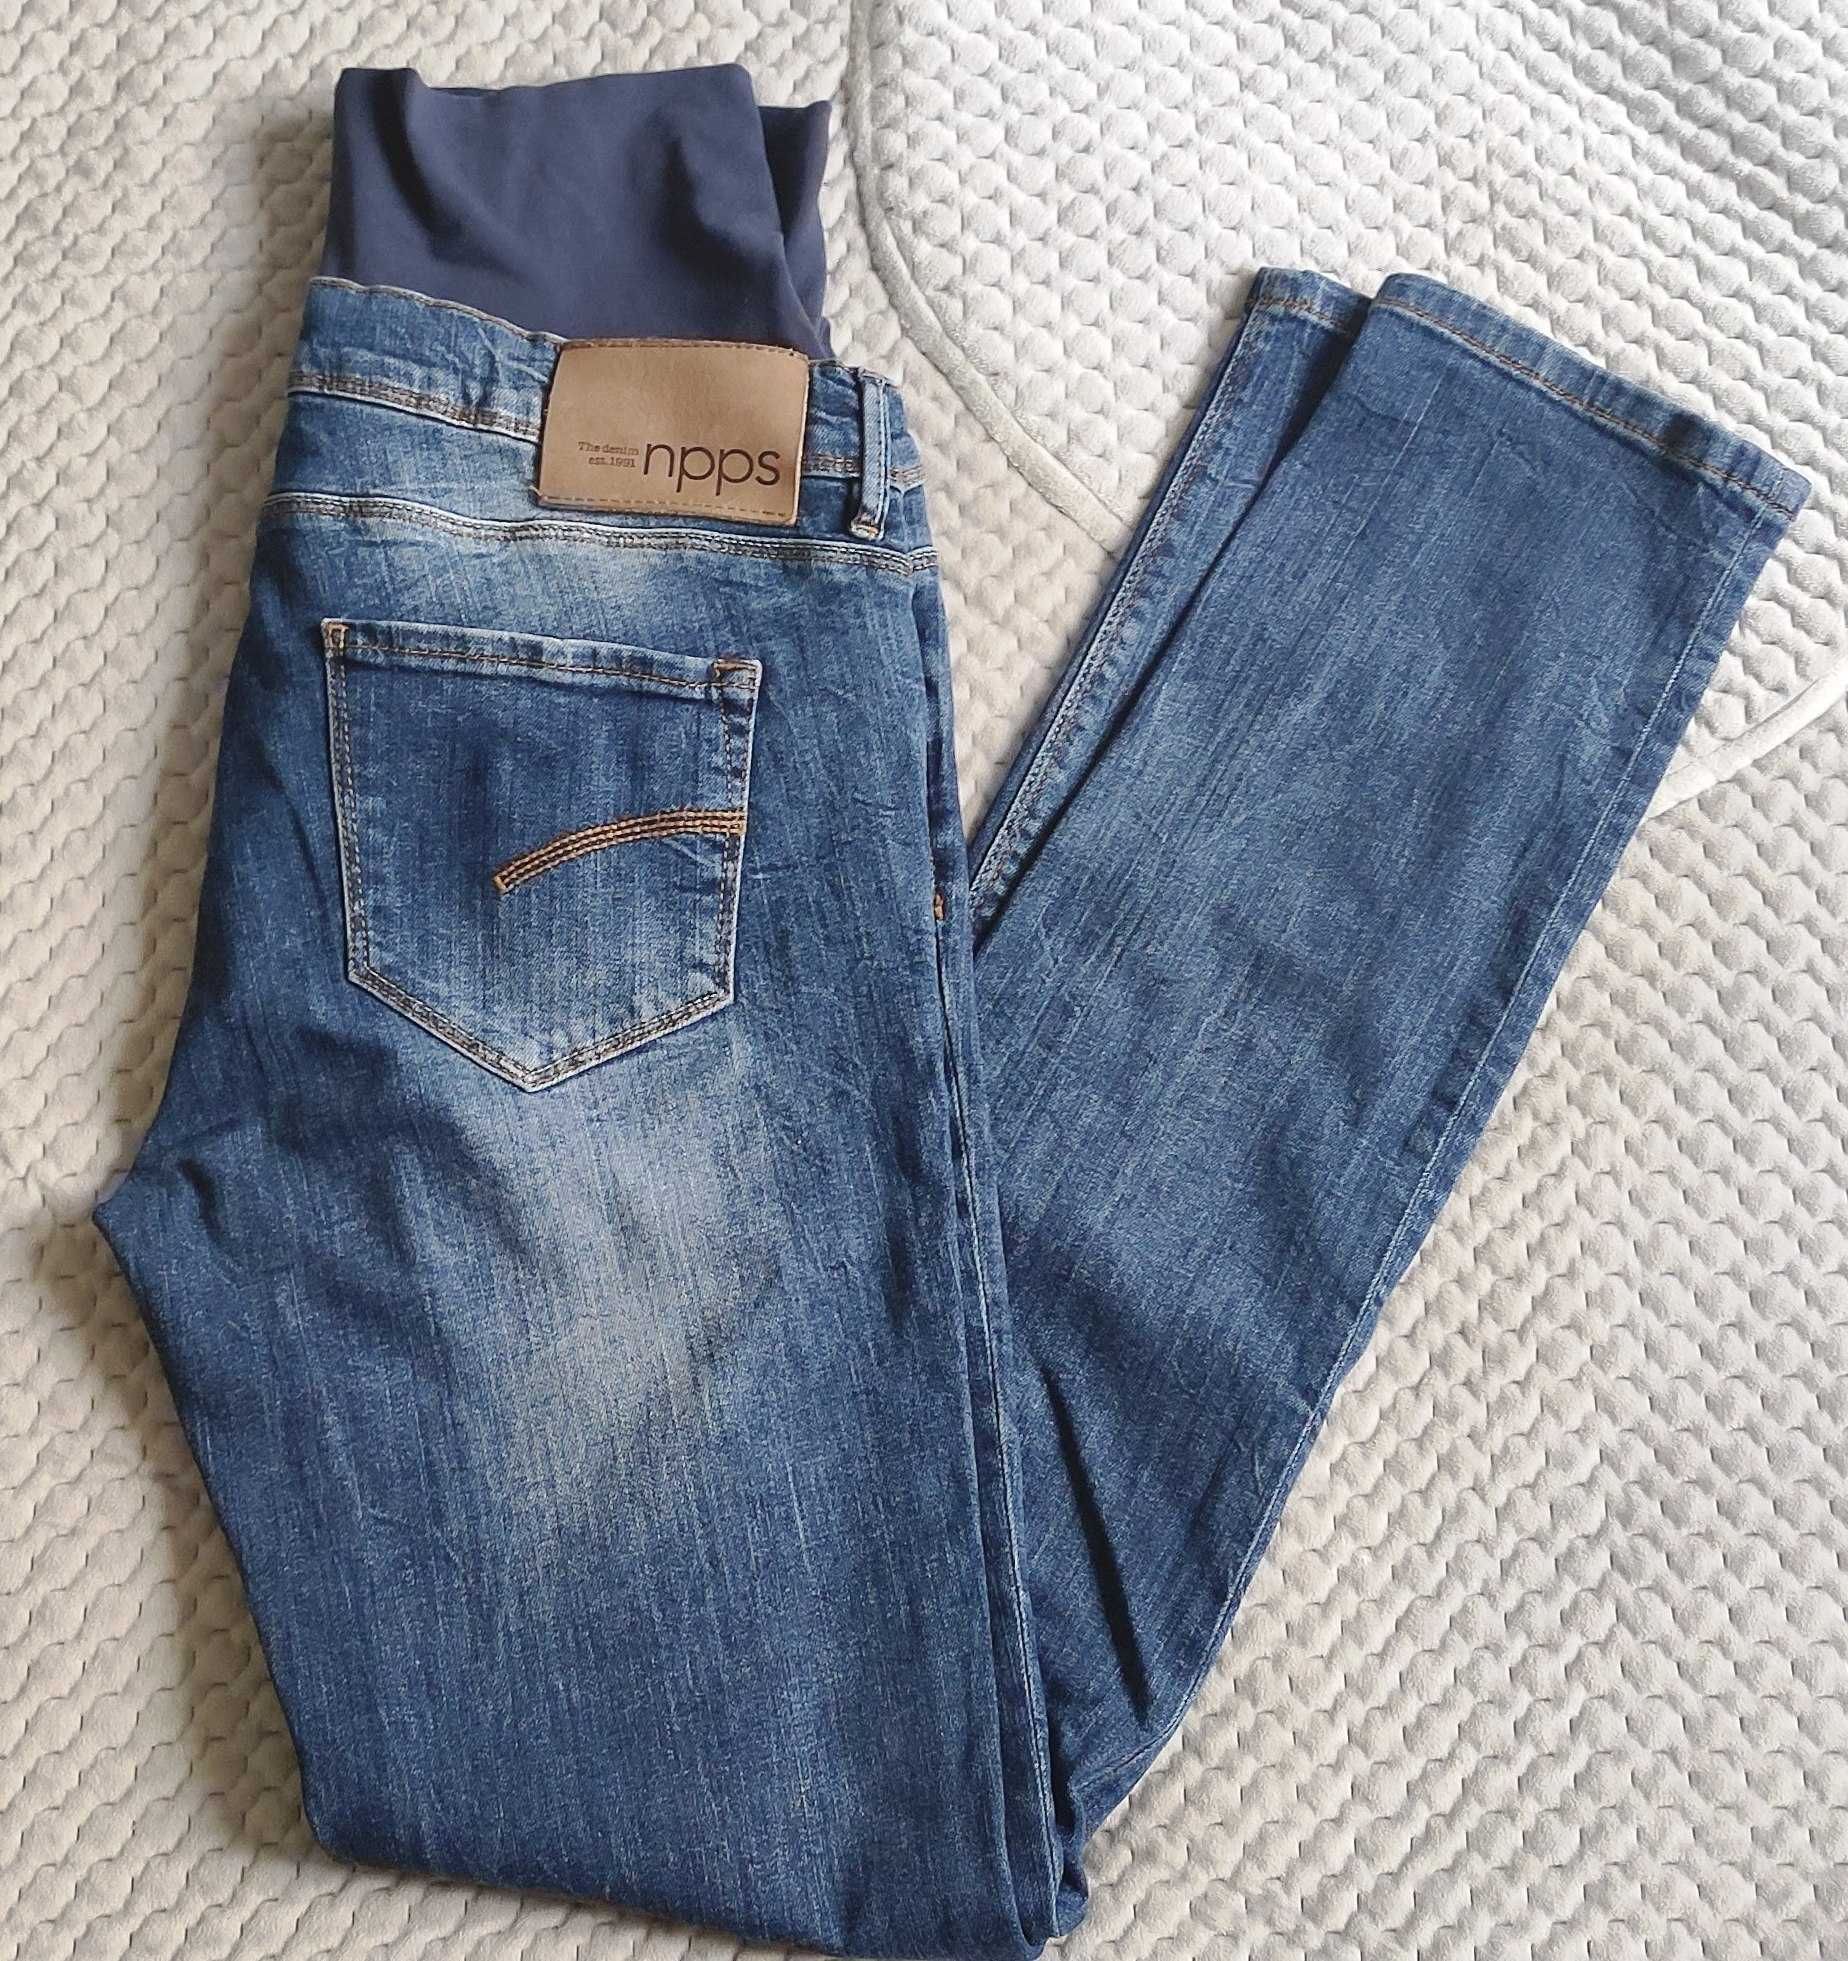 NOPPIES npps spodnie ciążowe jeans MAMA R. 30